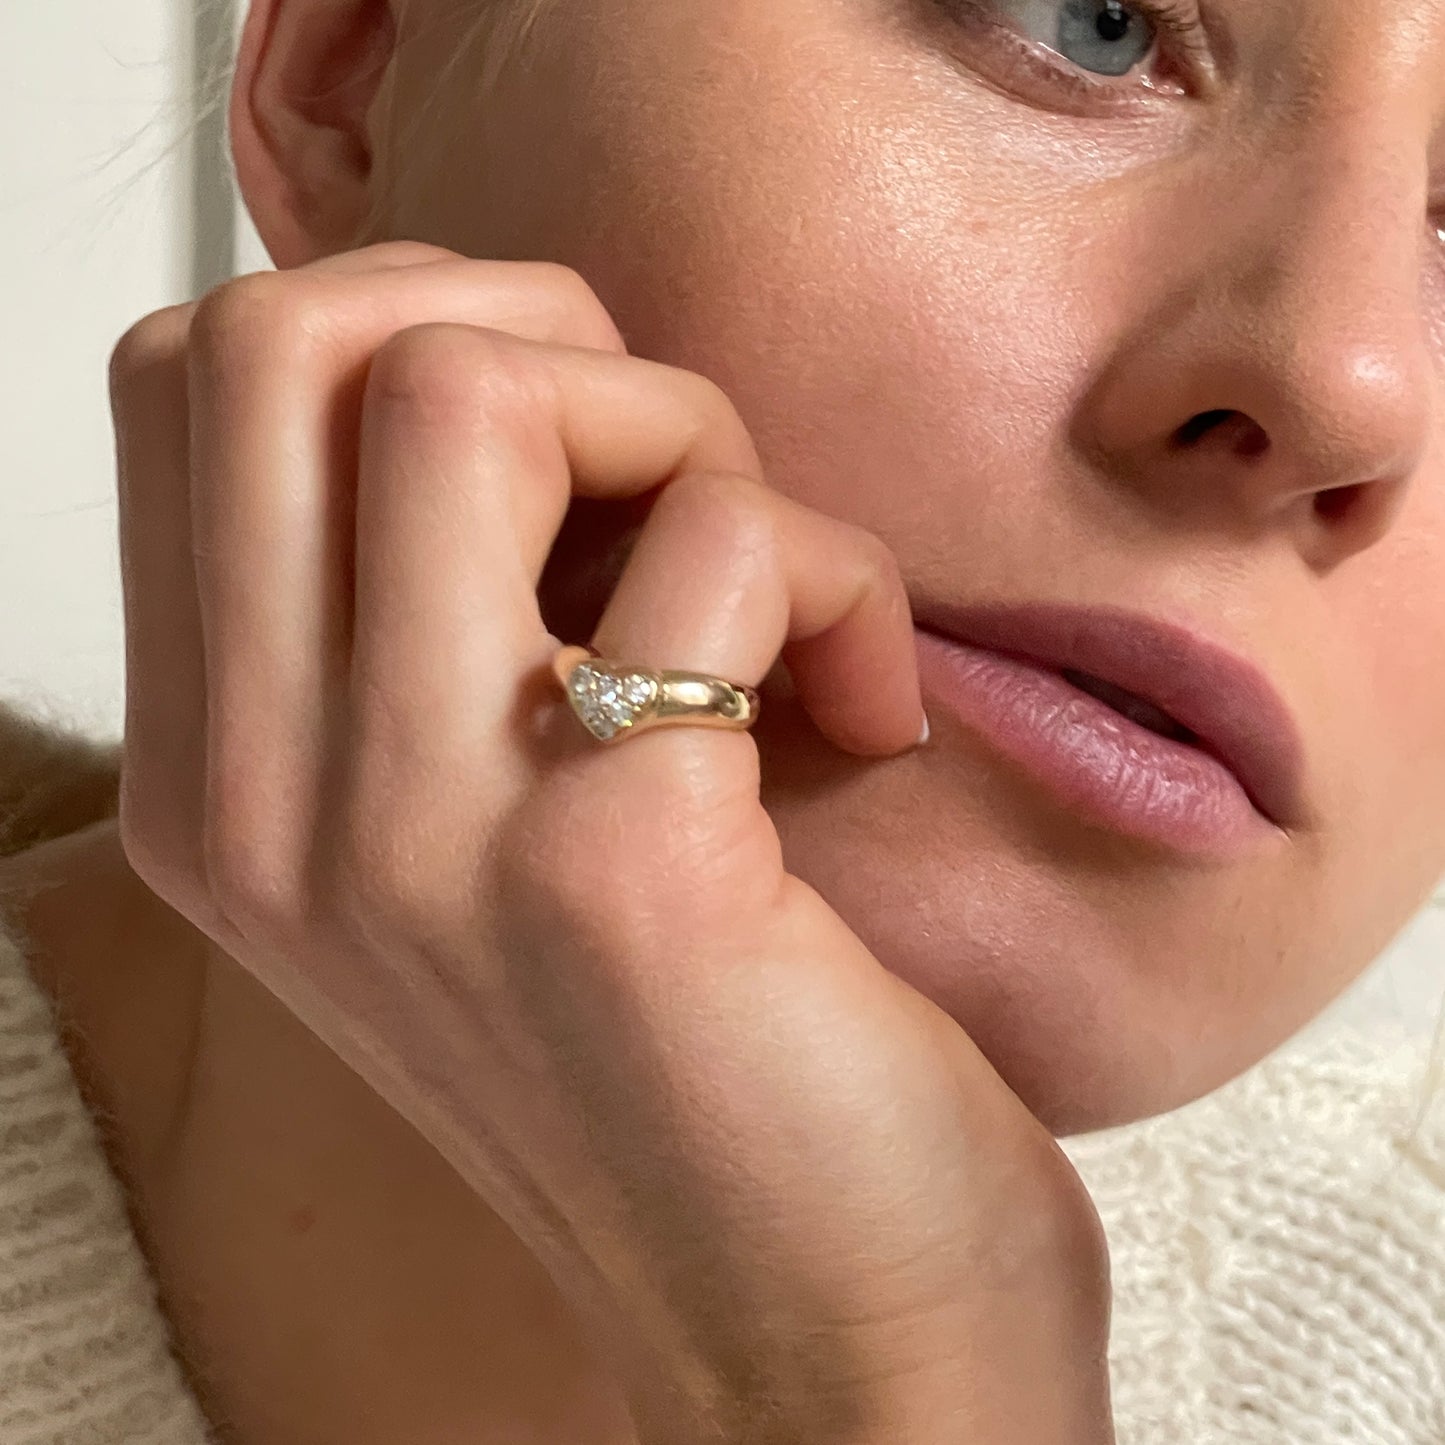 Tiffany & Co "Heart" ring